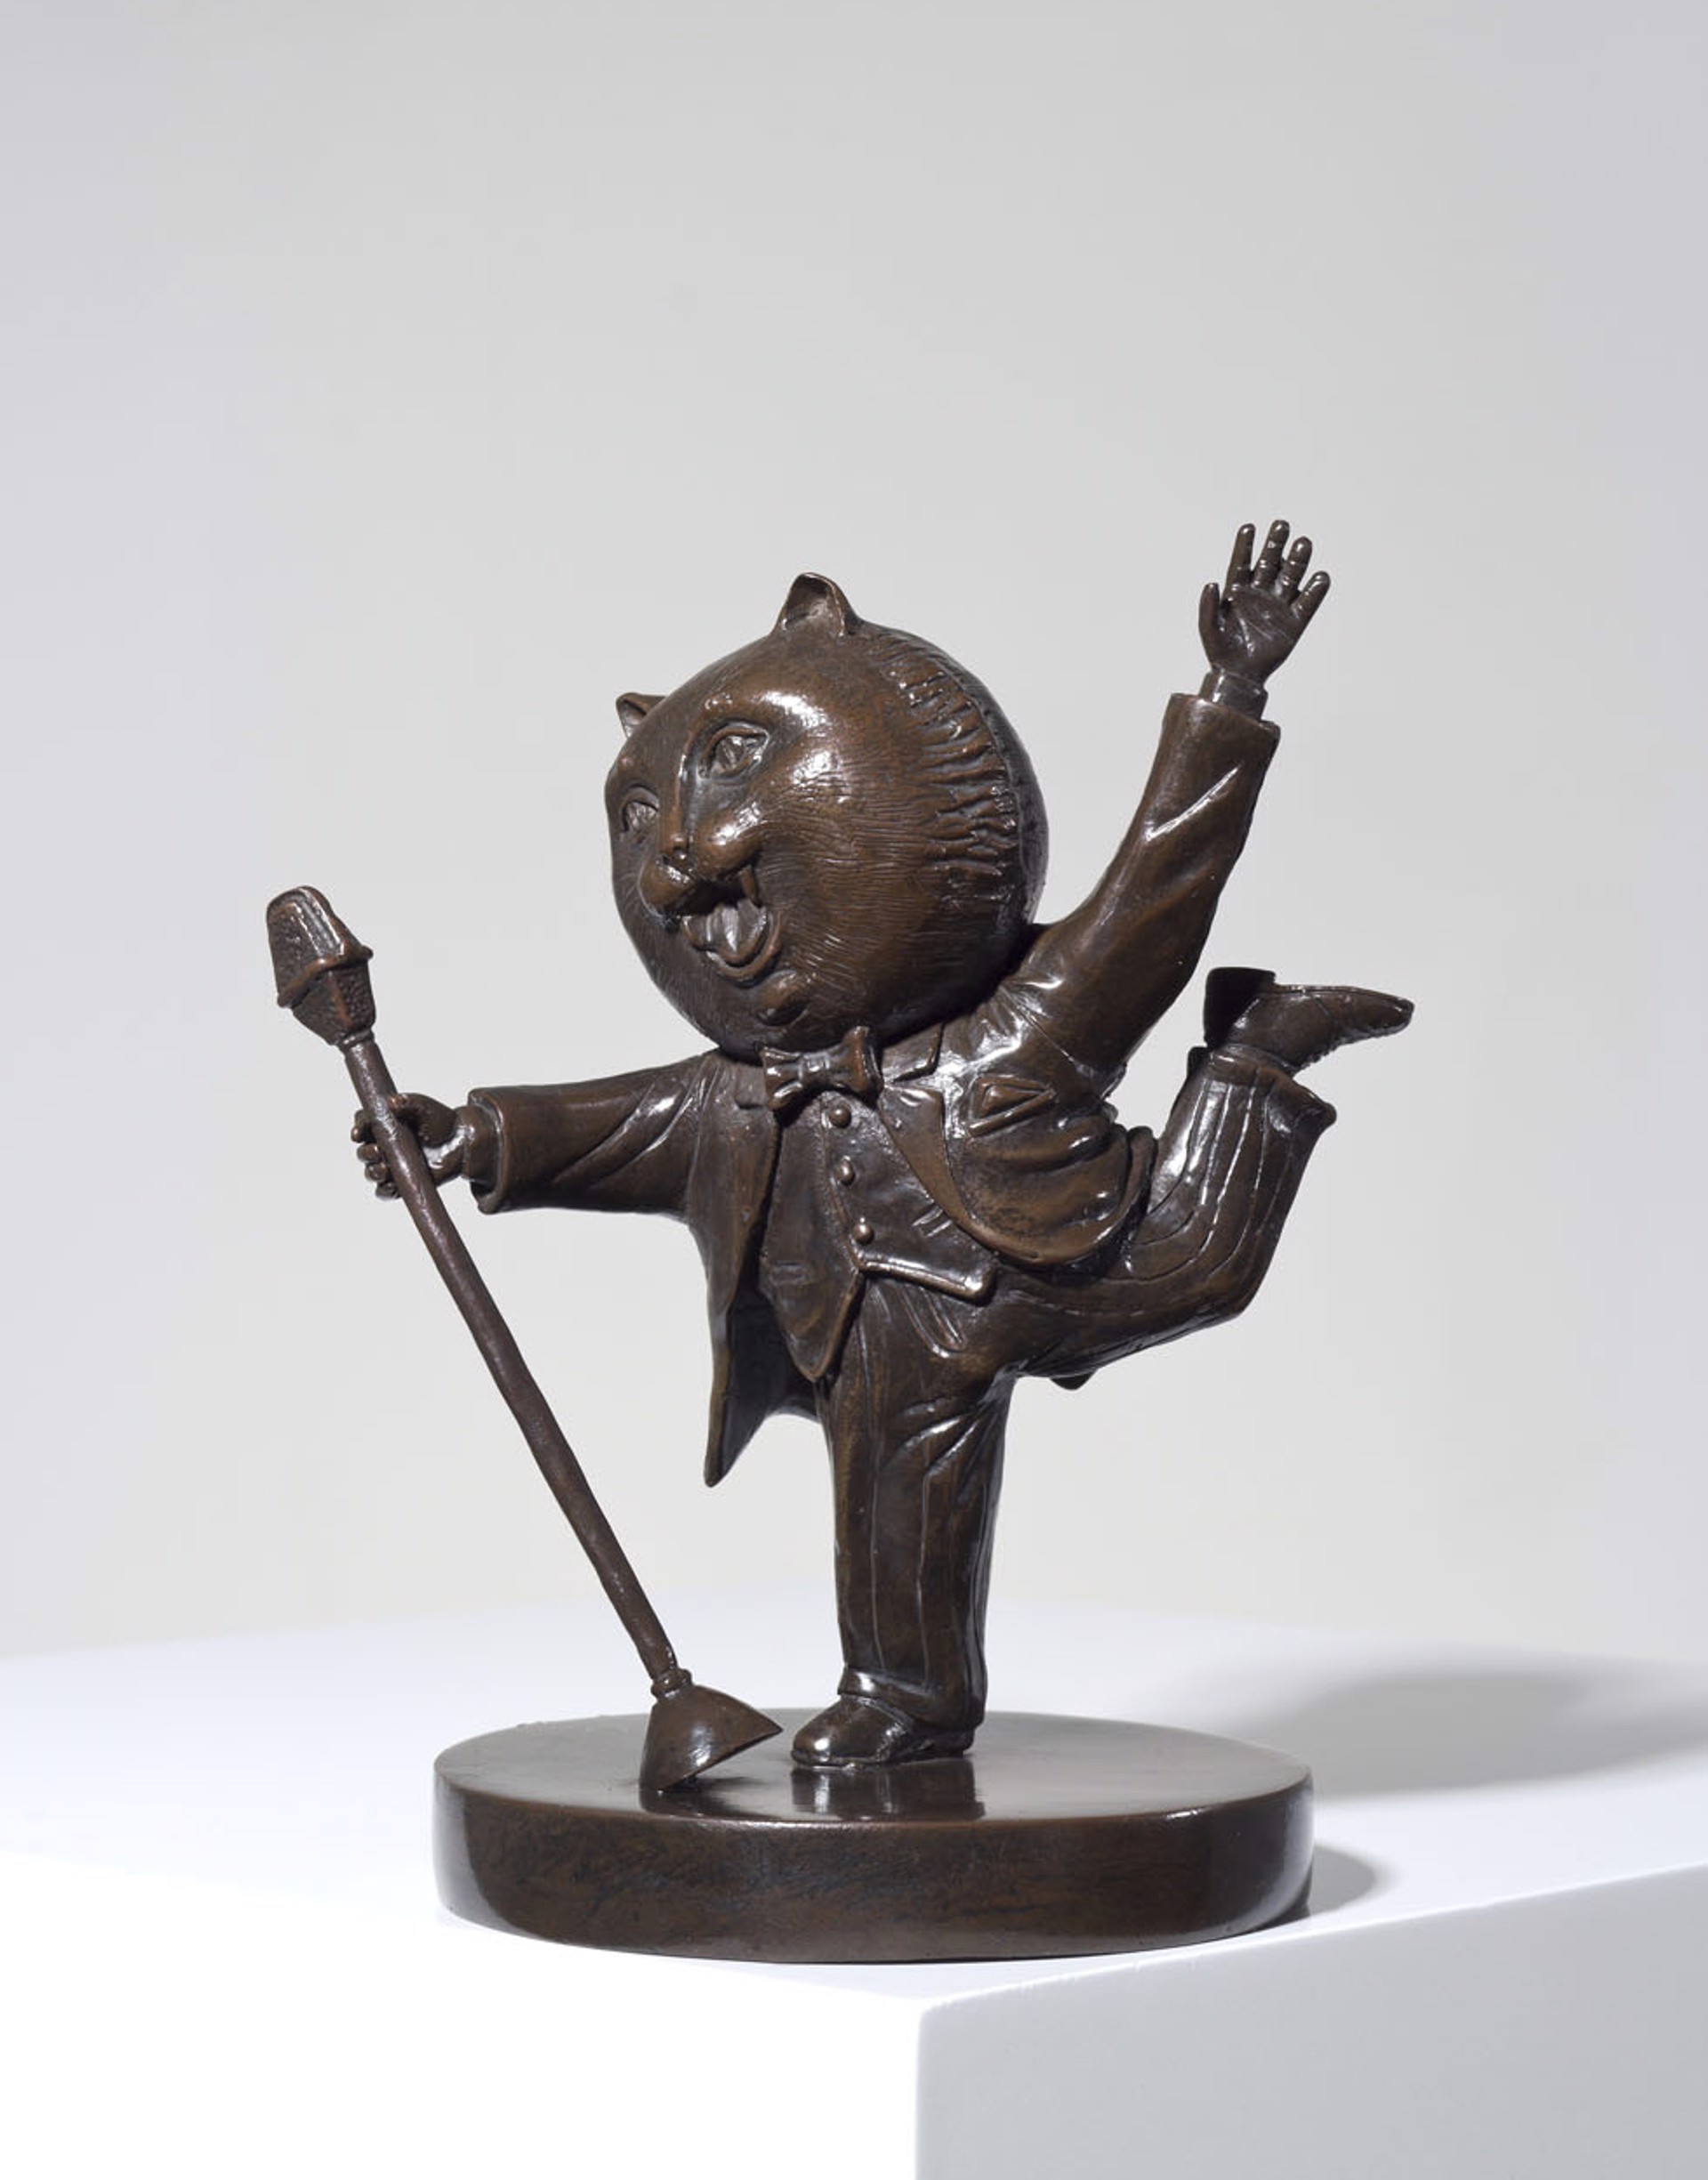 Singing Cat by Sergio Bustamante (sculptor)